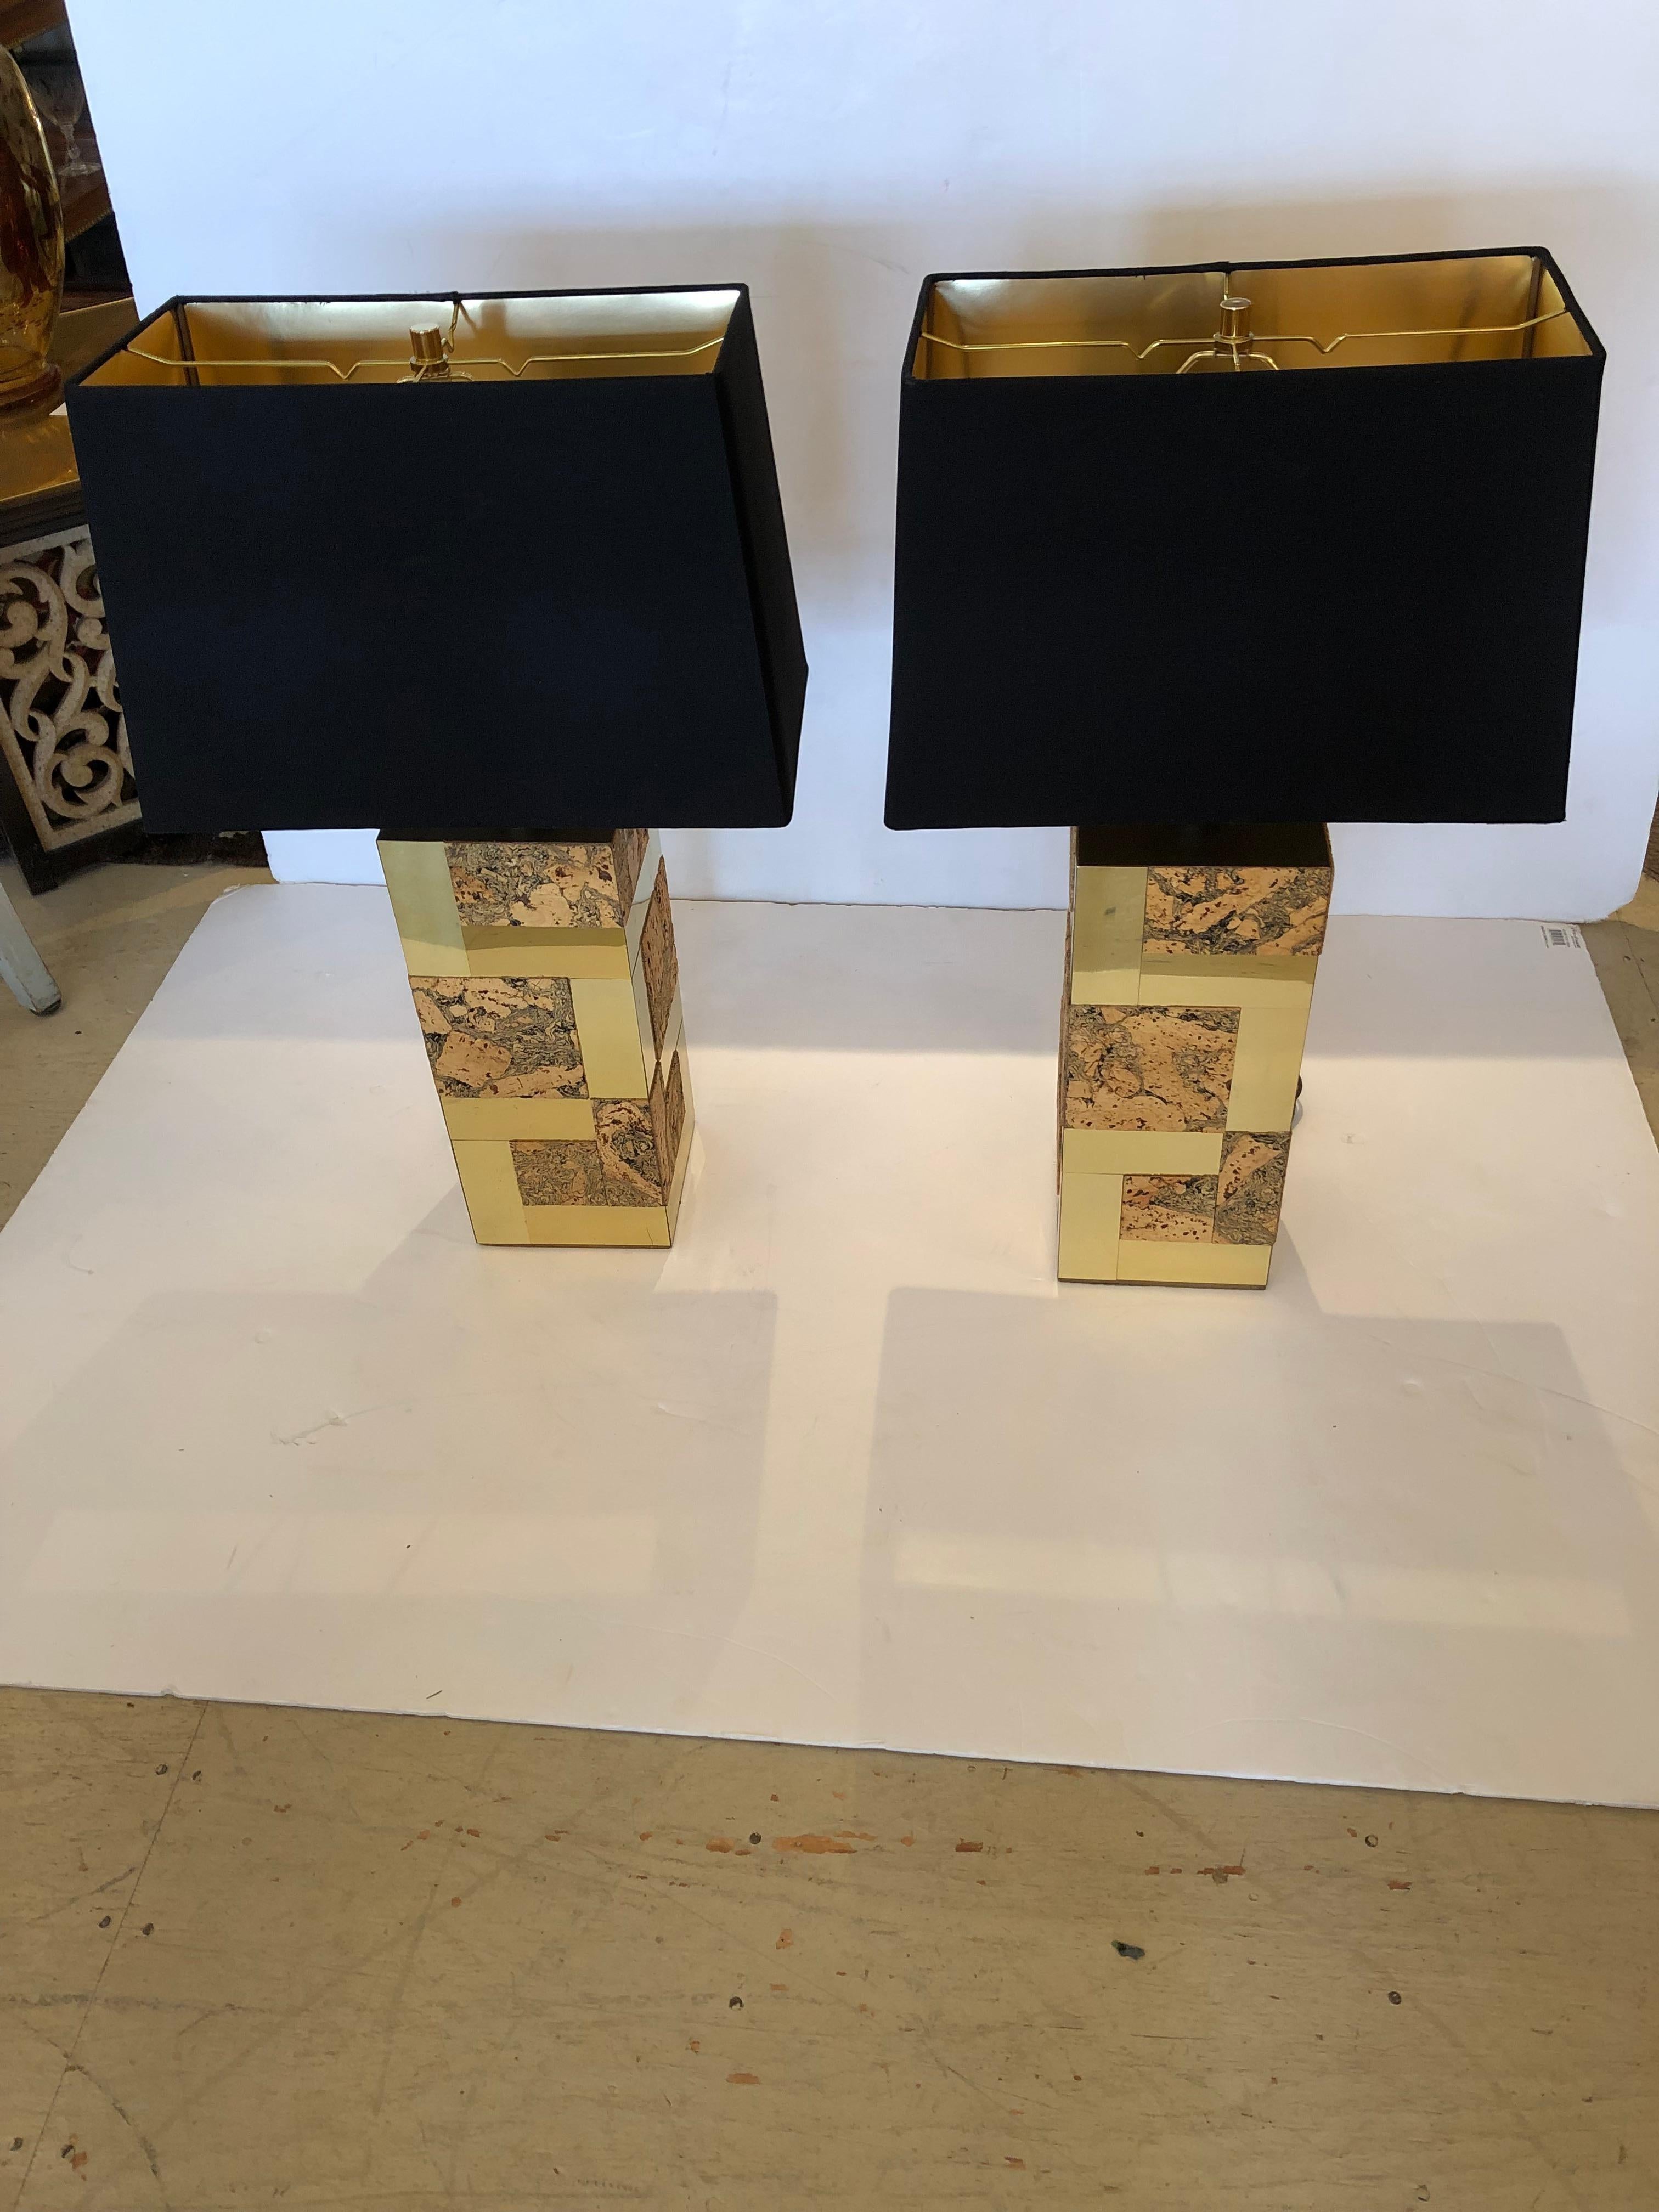 Une paire rare et iconique de lampes de table cubiques allongées en laiton et liège, attribuée à Paul Evans. Nous pensons qu'ils sont authentiques mais ne portent pas de marque.
Chunky et fabuleux ! Des nuances noires haut de gamme flambant neuves